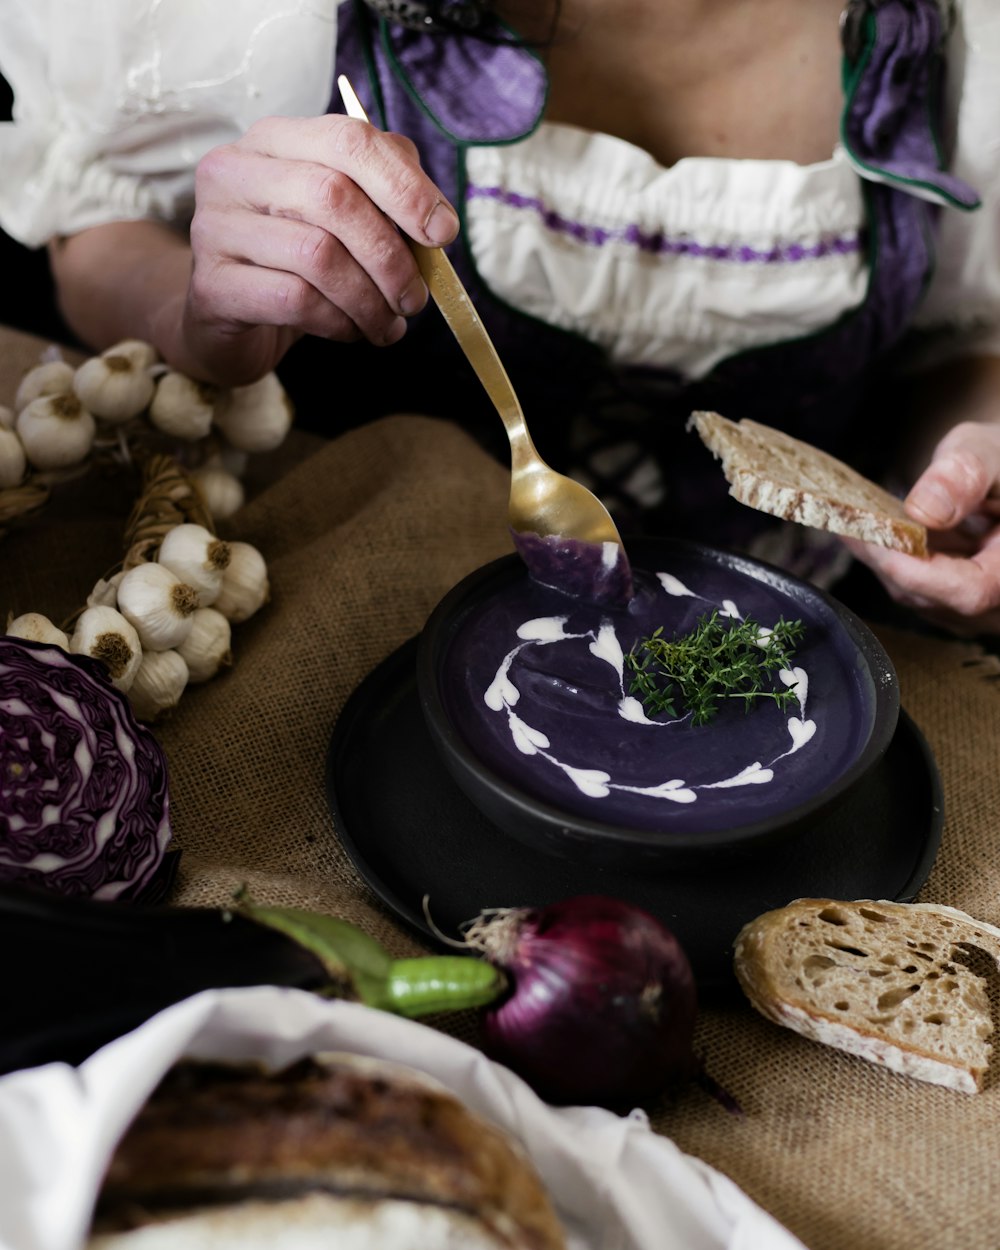 Una donna in un vestito viola sta preparando il cibo